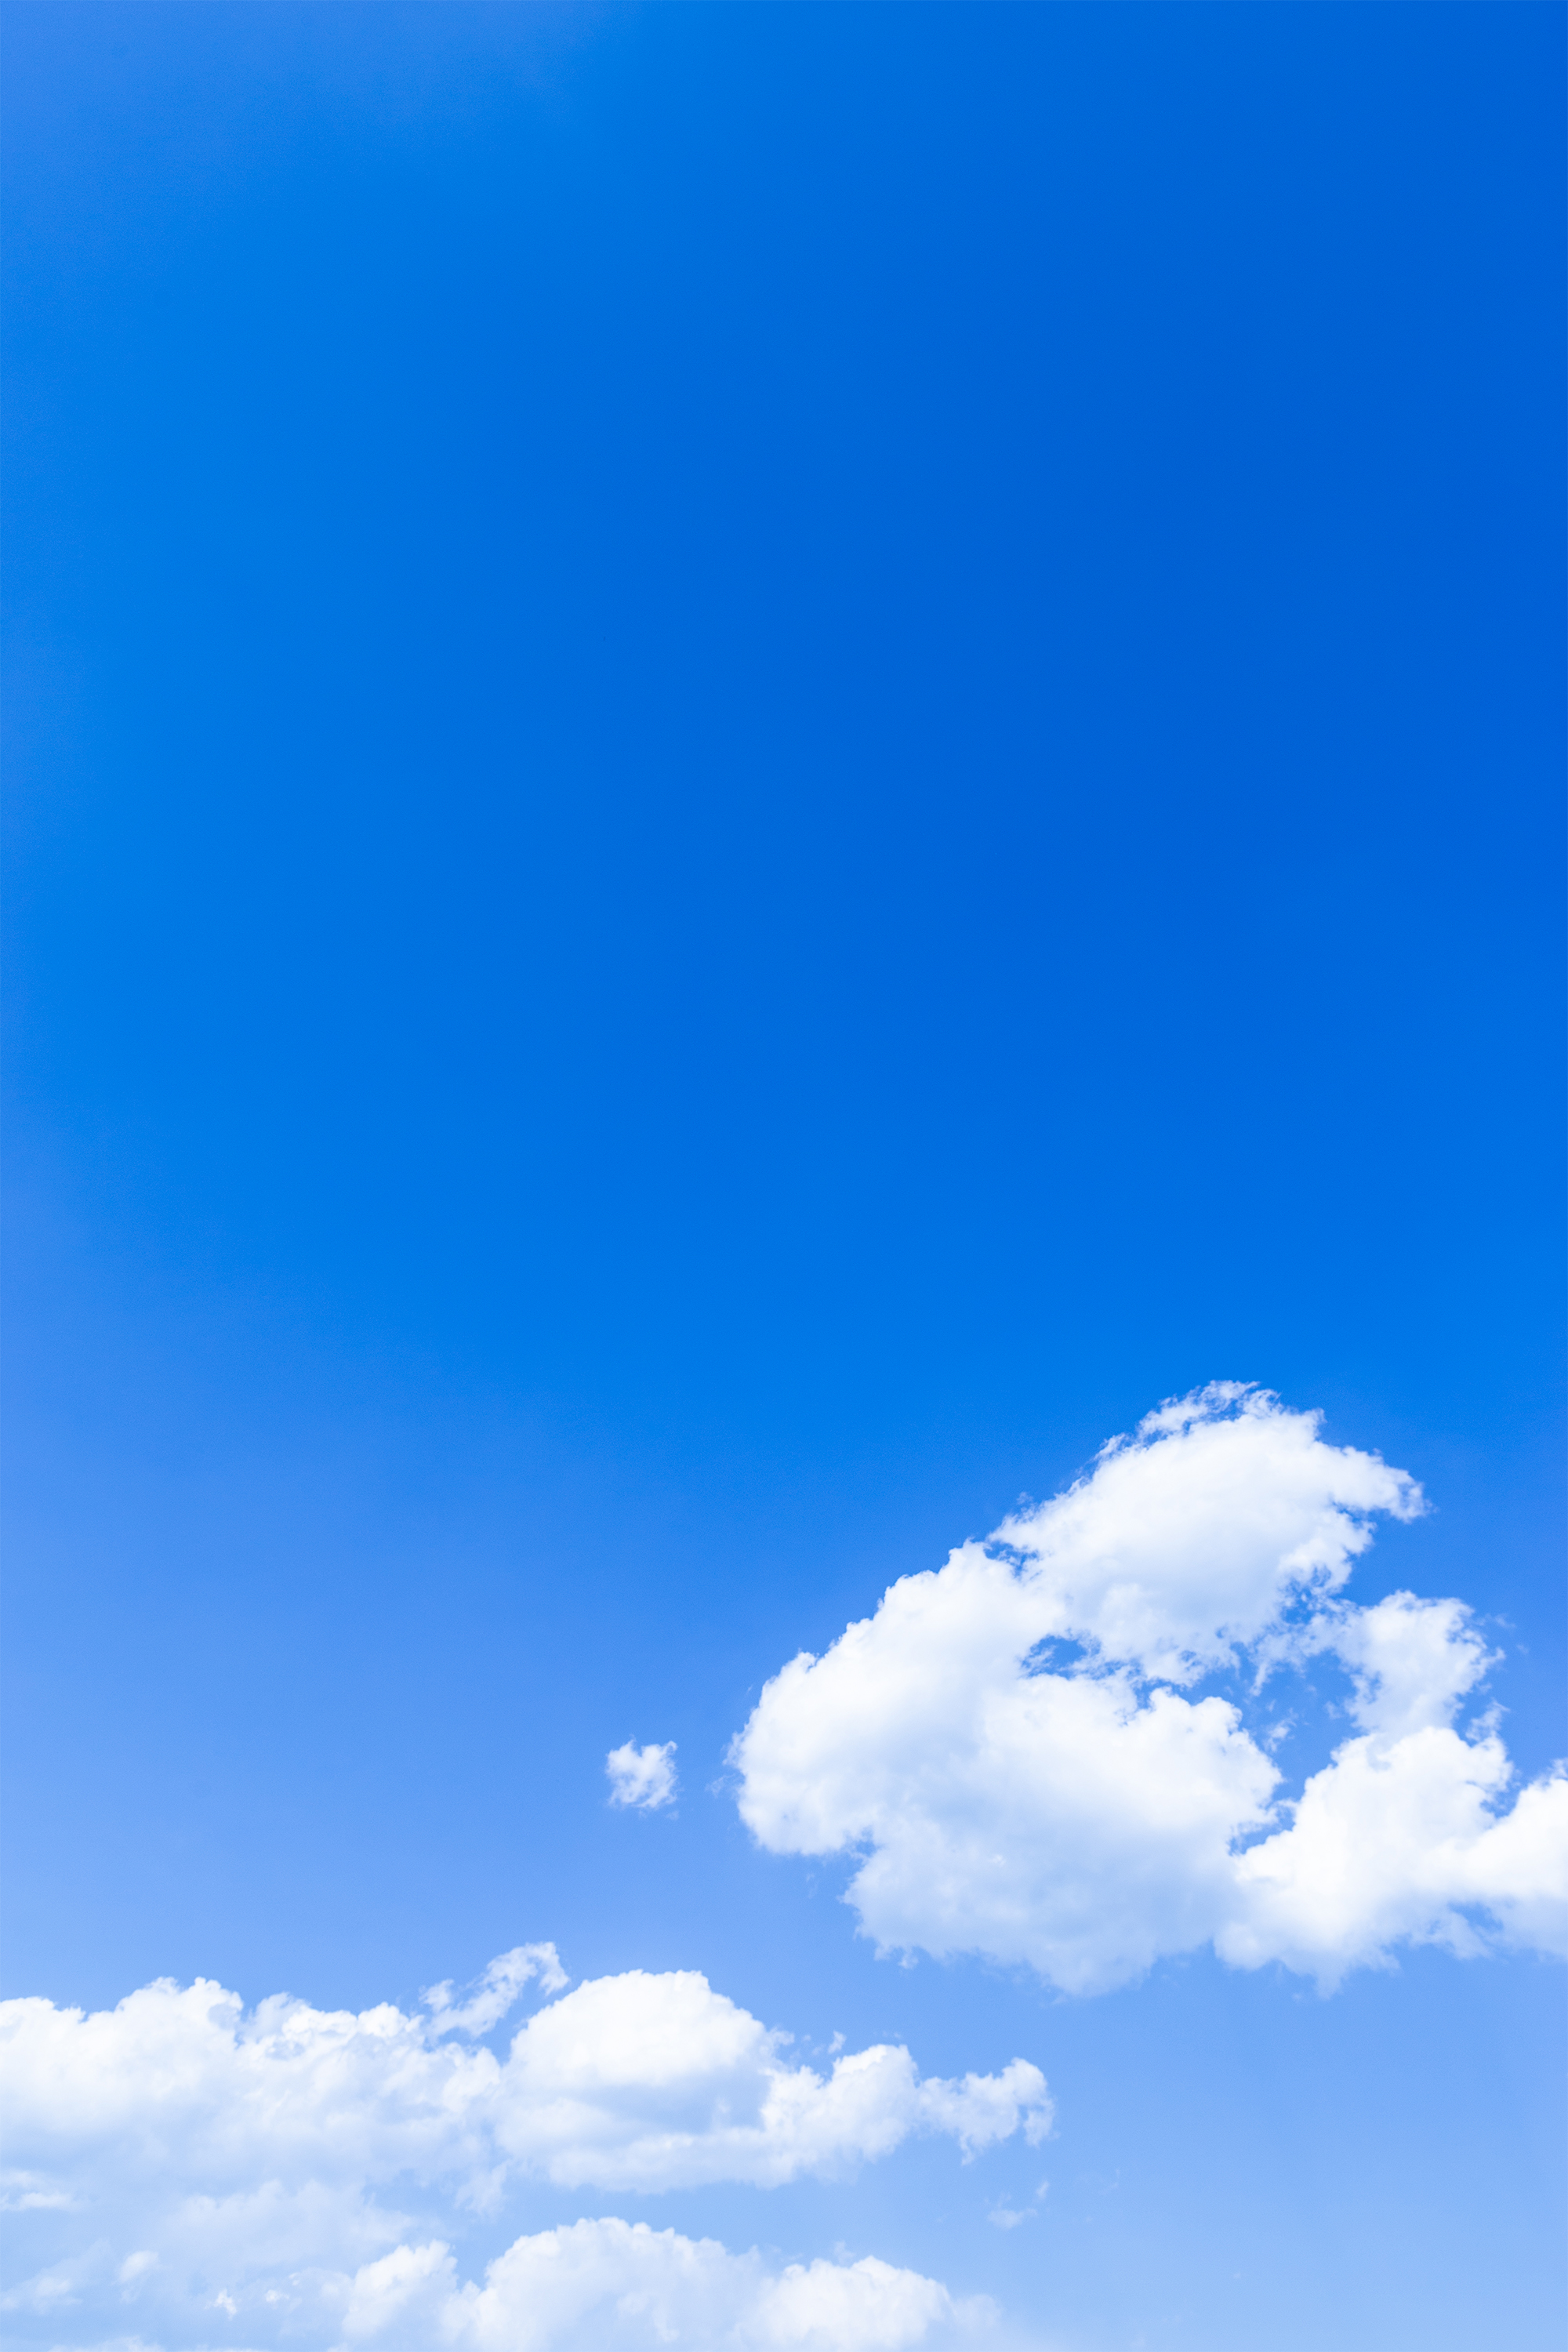 青空と雲02 無料の高画質フリー写真素材 イメージズラボ